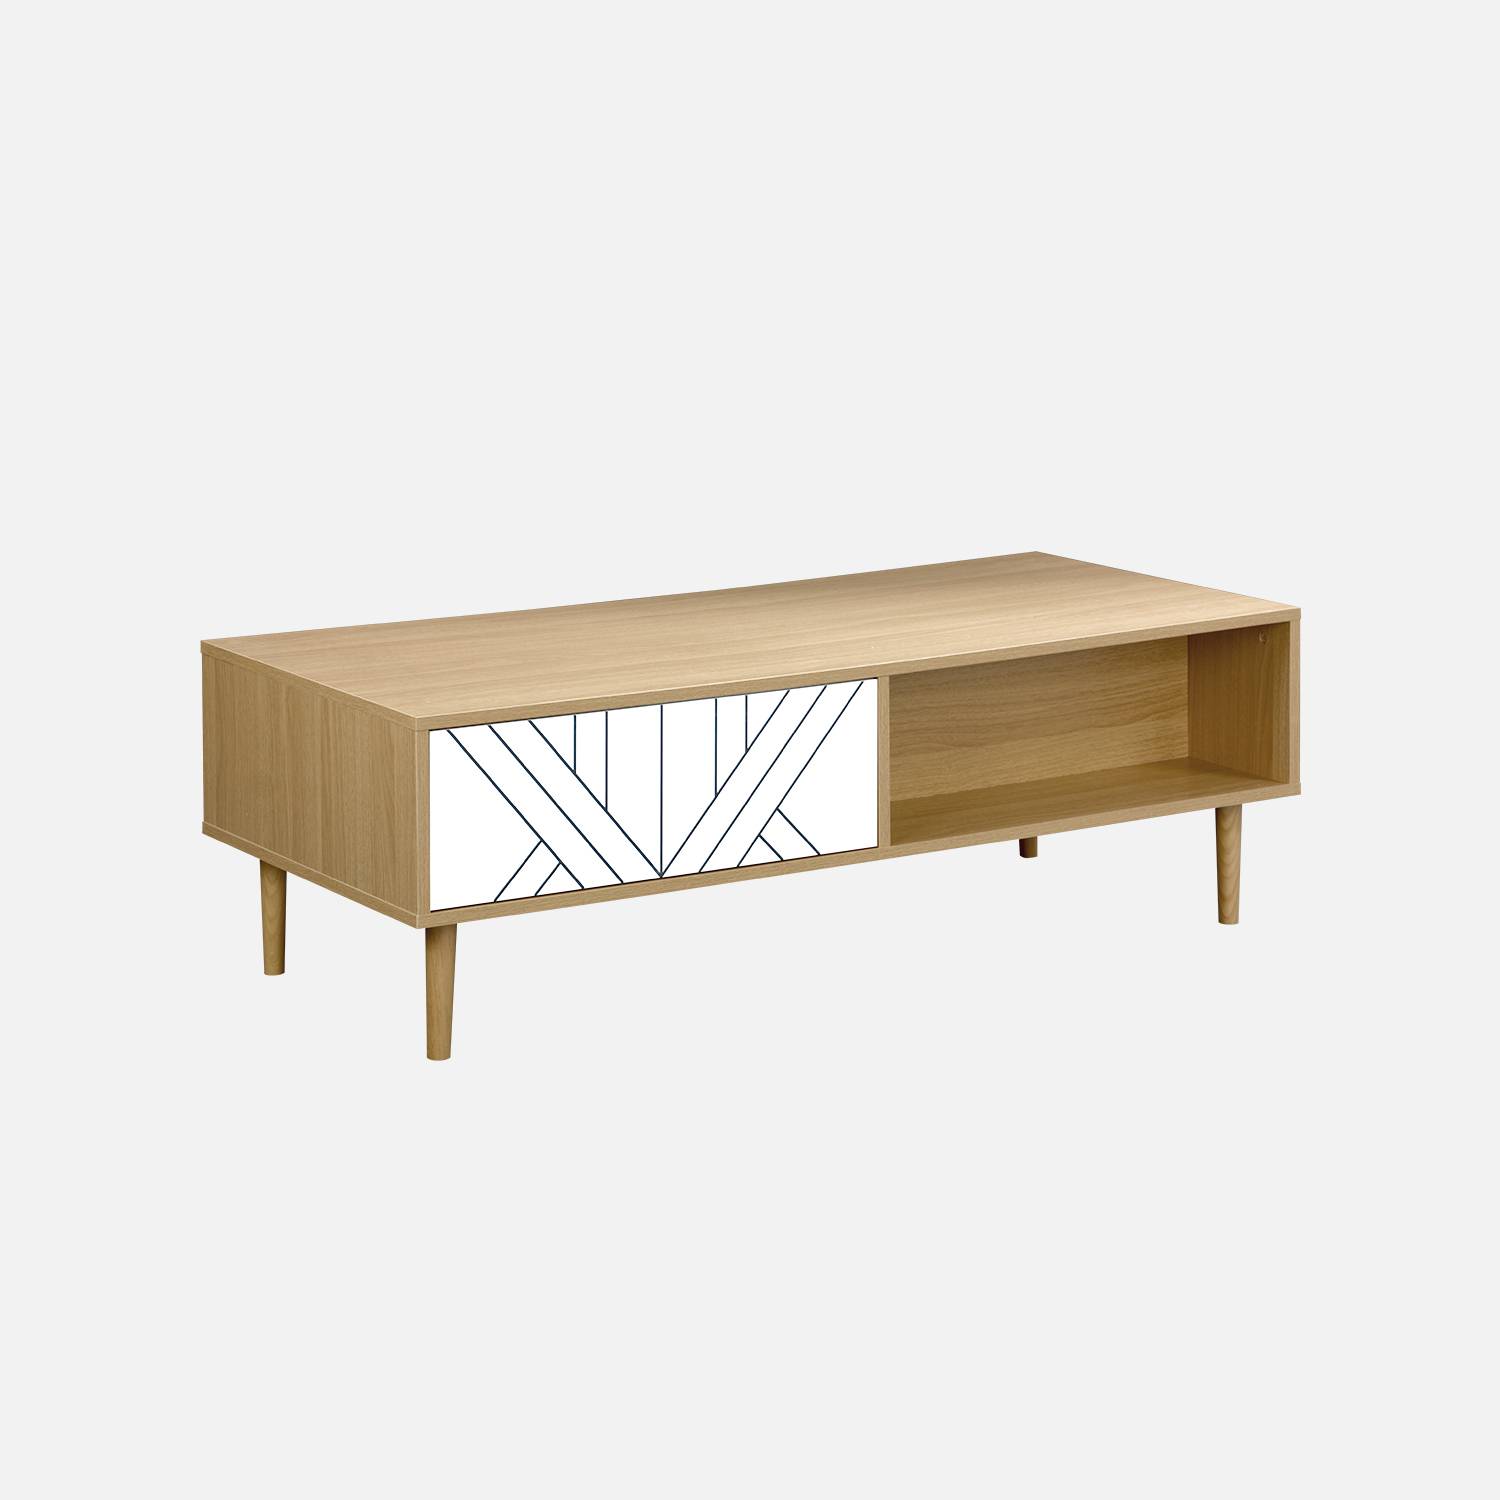 Table basse en décor bois et blanc - Mika - 2 tiroirs, 2 espaces de rangement, L 120 x l 55 x H 40cm,sweeek,Photo3